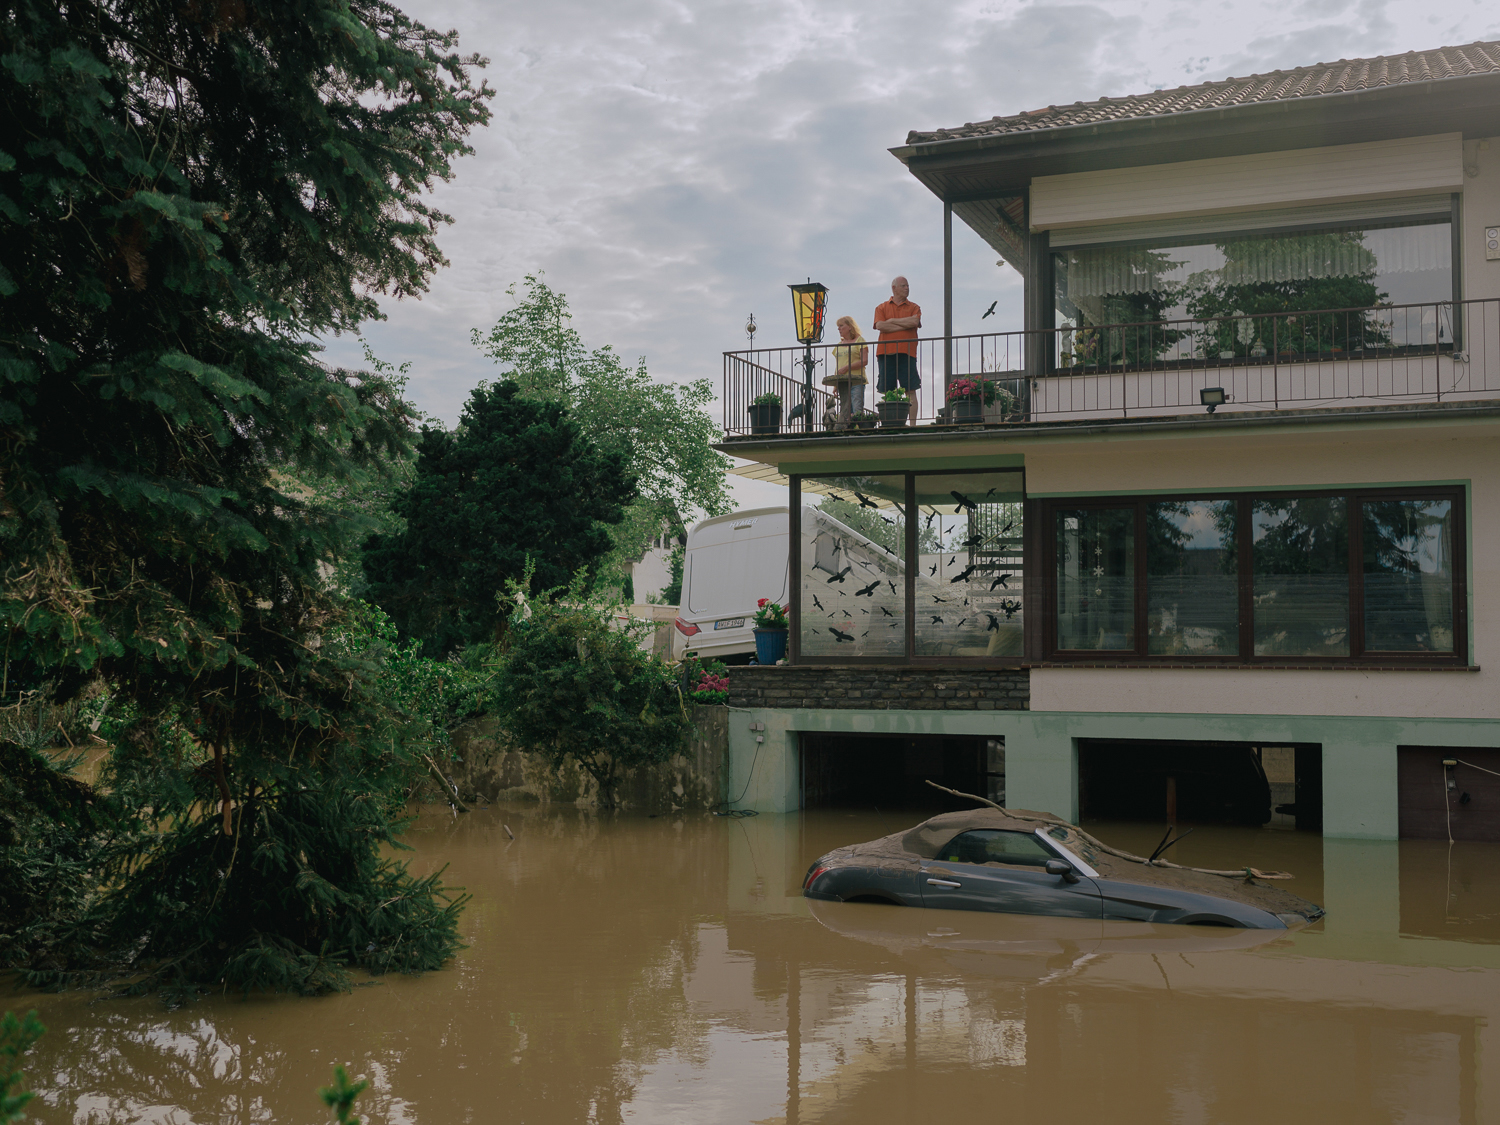 The Flood in Western Germany 2021: Menschen stehen auf ihrem Balkon in einem Haus in Ahrweiler